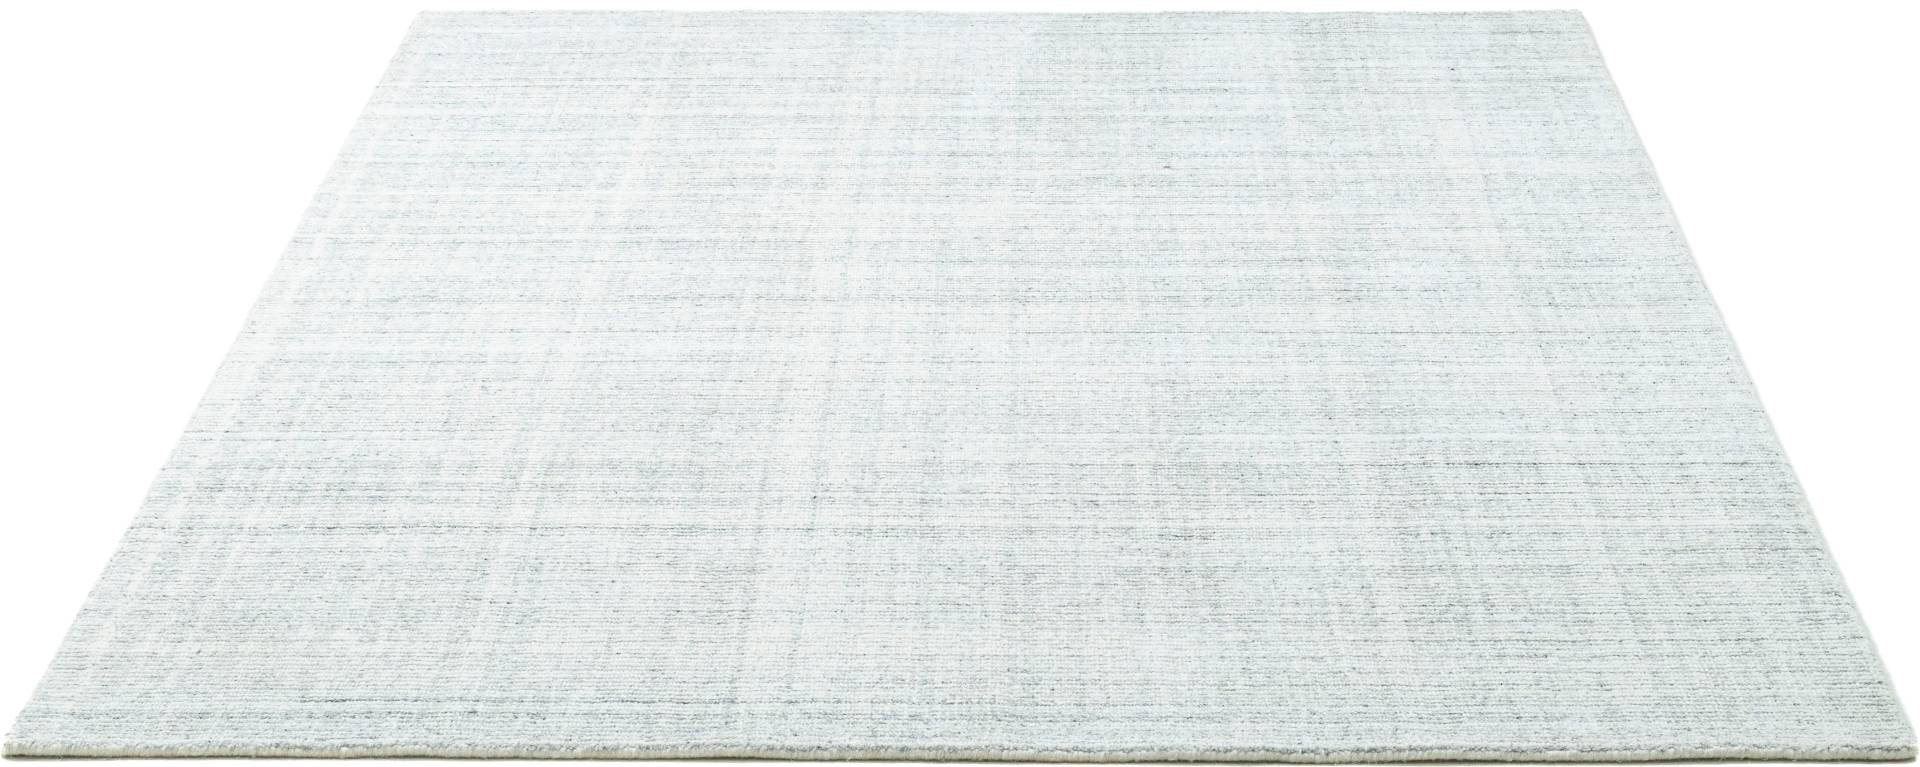 Sansibar Teppich »Tinnum Uni meliert«, rechteckig, meliert, 60% Wolle, handgearbeitet in aufwendiger Handloom-Technik von Sansibar